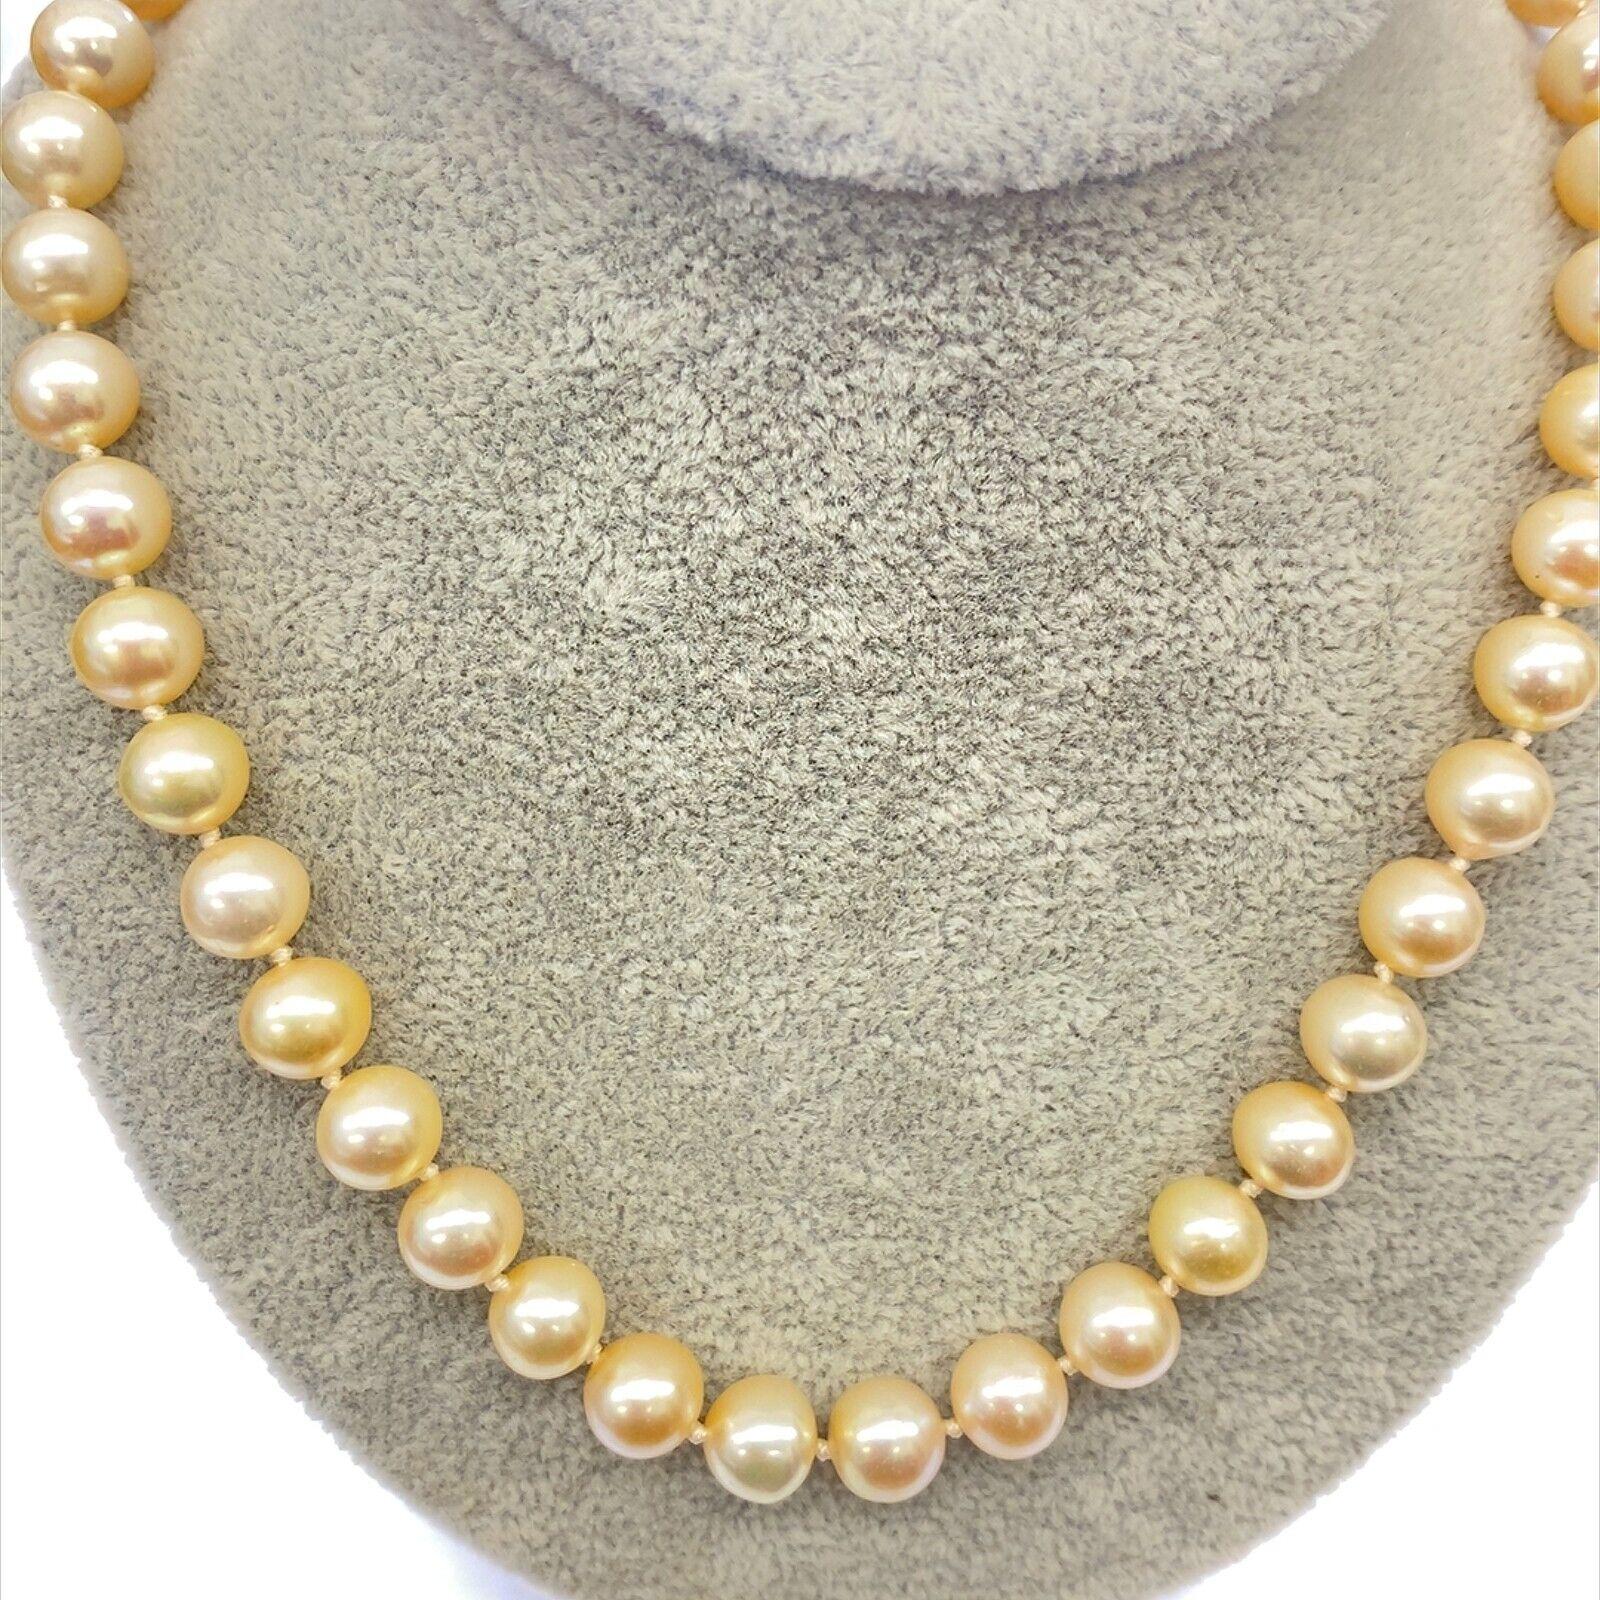 Un magnifique collier de perles, unique et féminin. Les perles de culture d'eau douce blanches de 8 mm sont enfilées sur un fermoir en or jaune 18ct. Ces perles de culture sont un choix classique et polyvalent.

Informations supplémentaires : 
Poids